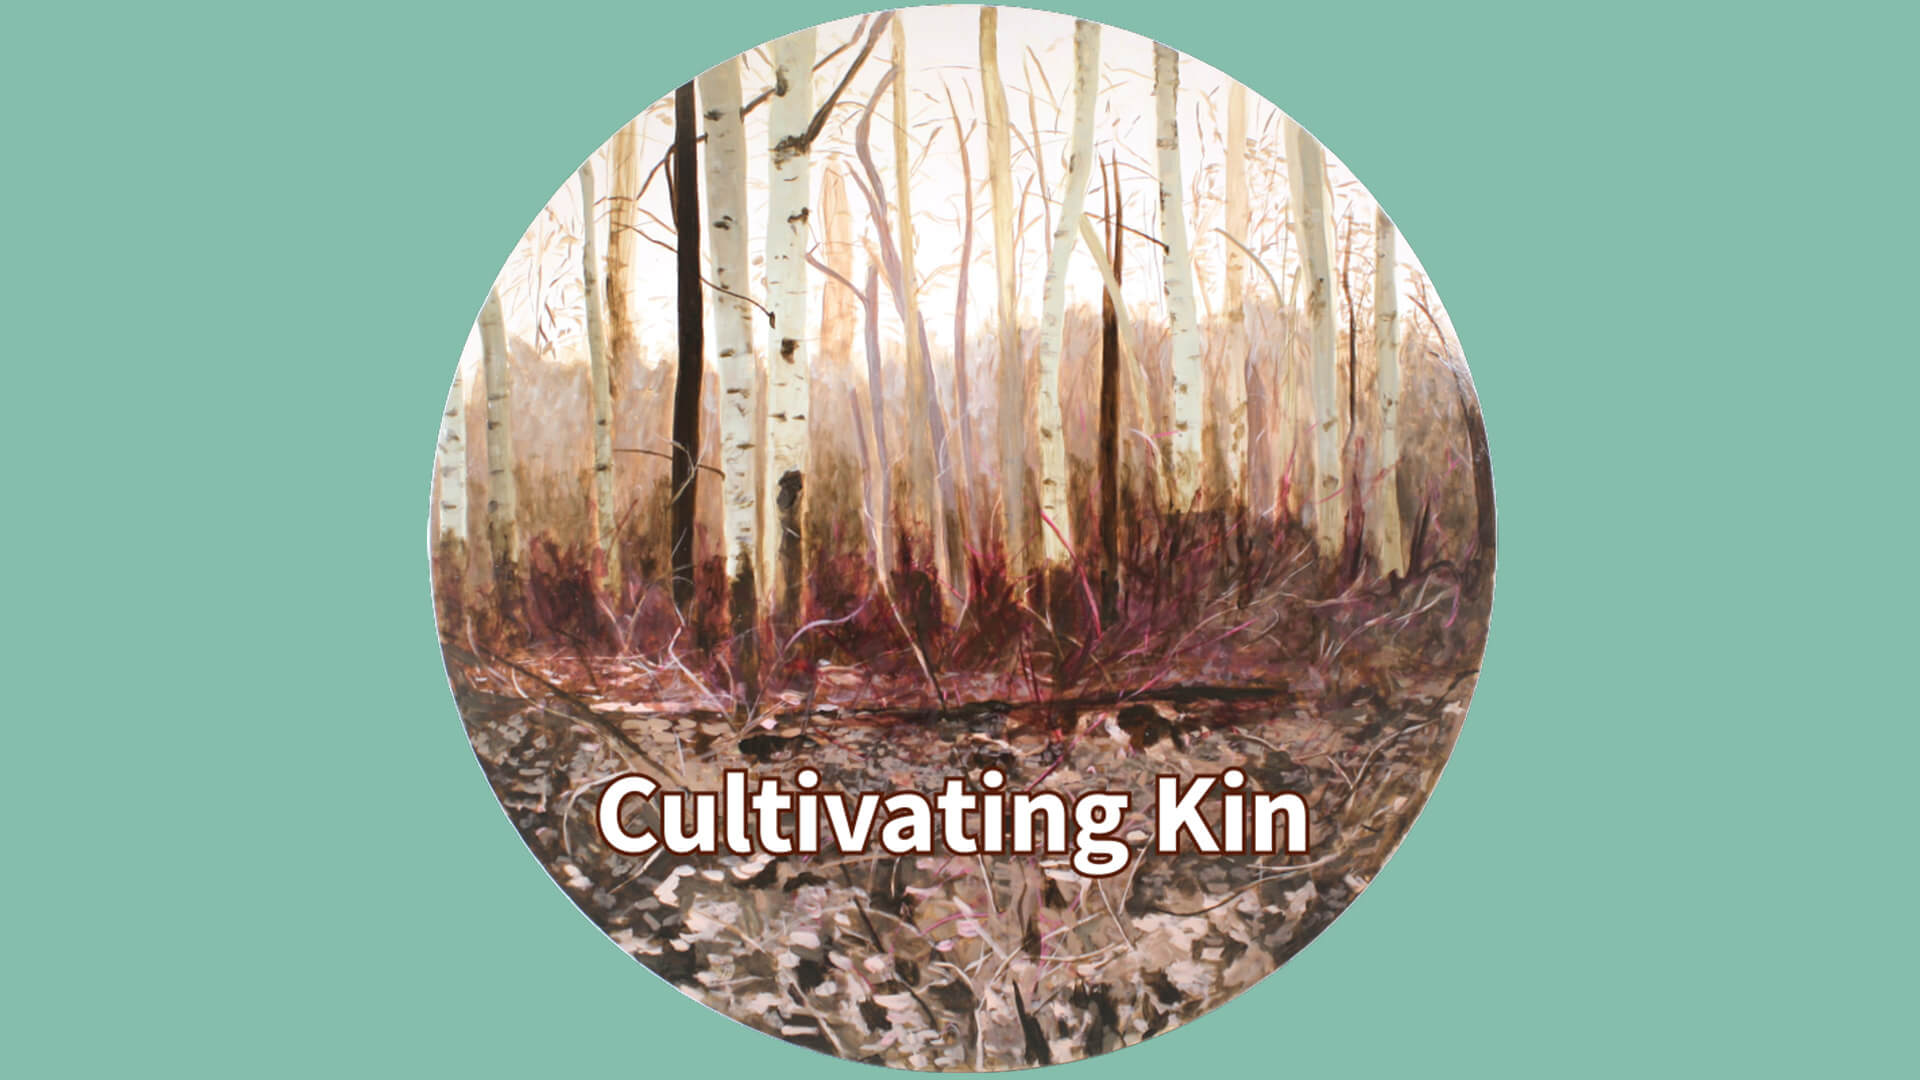 Cultivating Kin Conversations - Generative DIscomfort